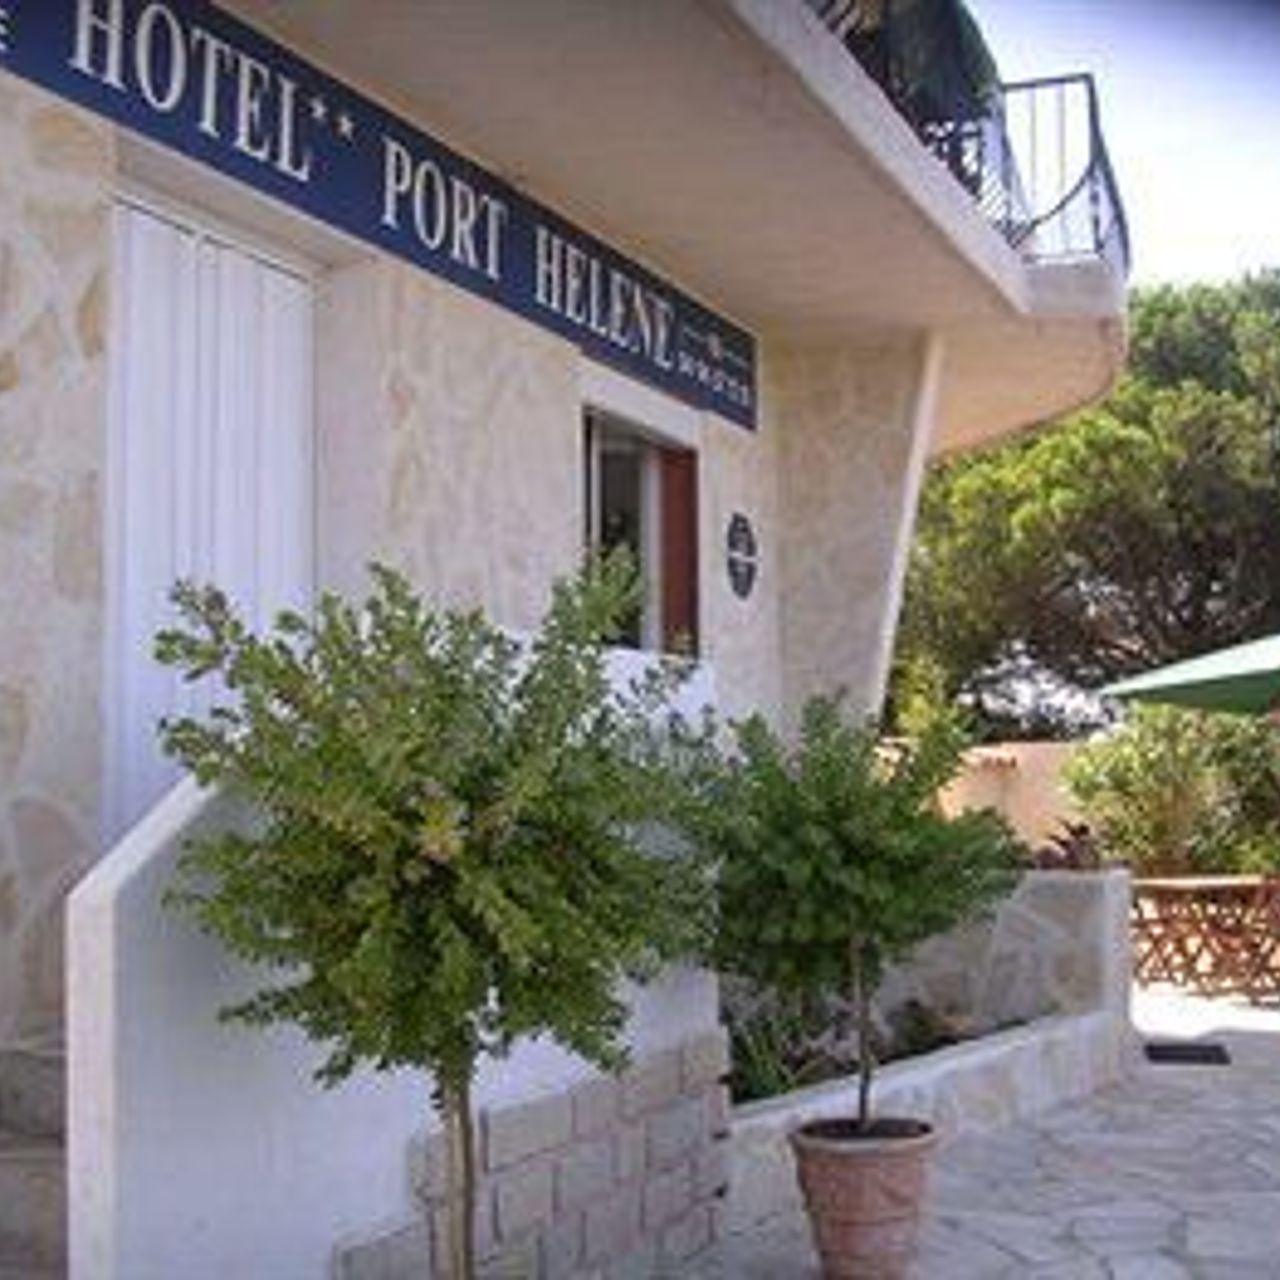 Hôtel Port Hélène - Hyères - Great prices at HOTEL INFO